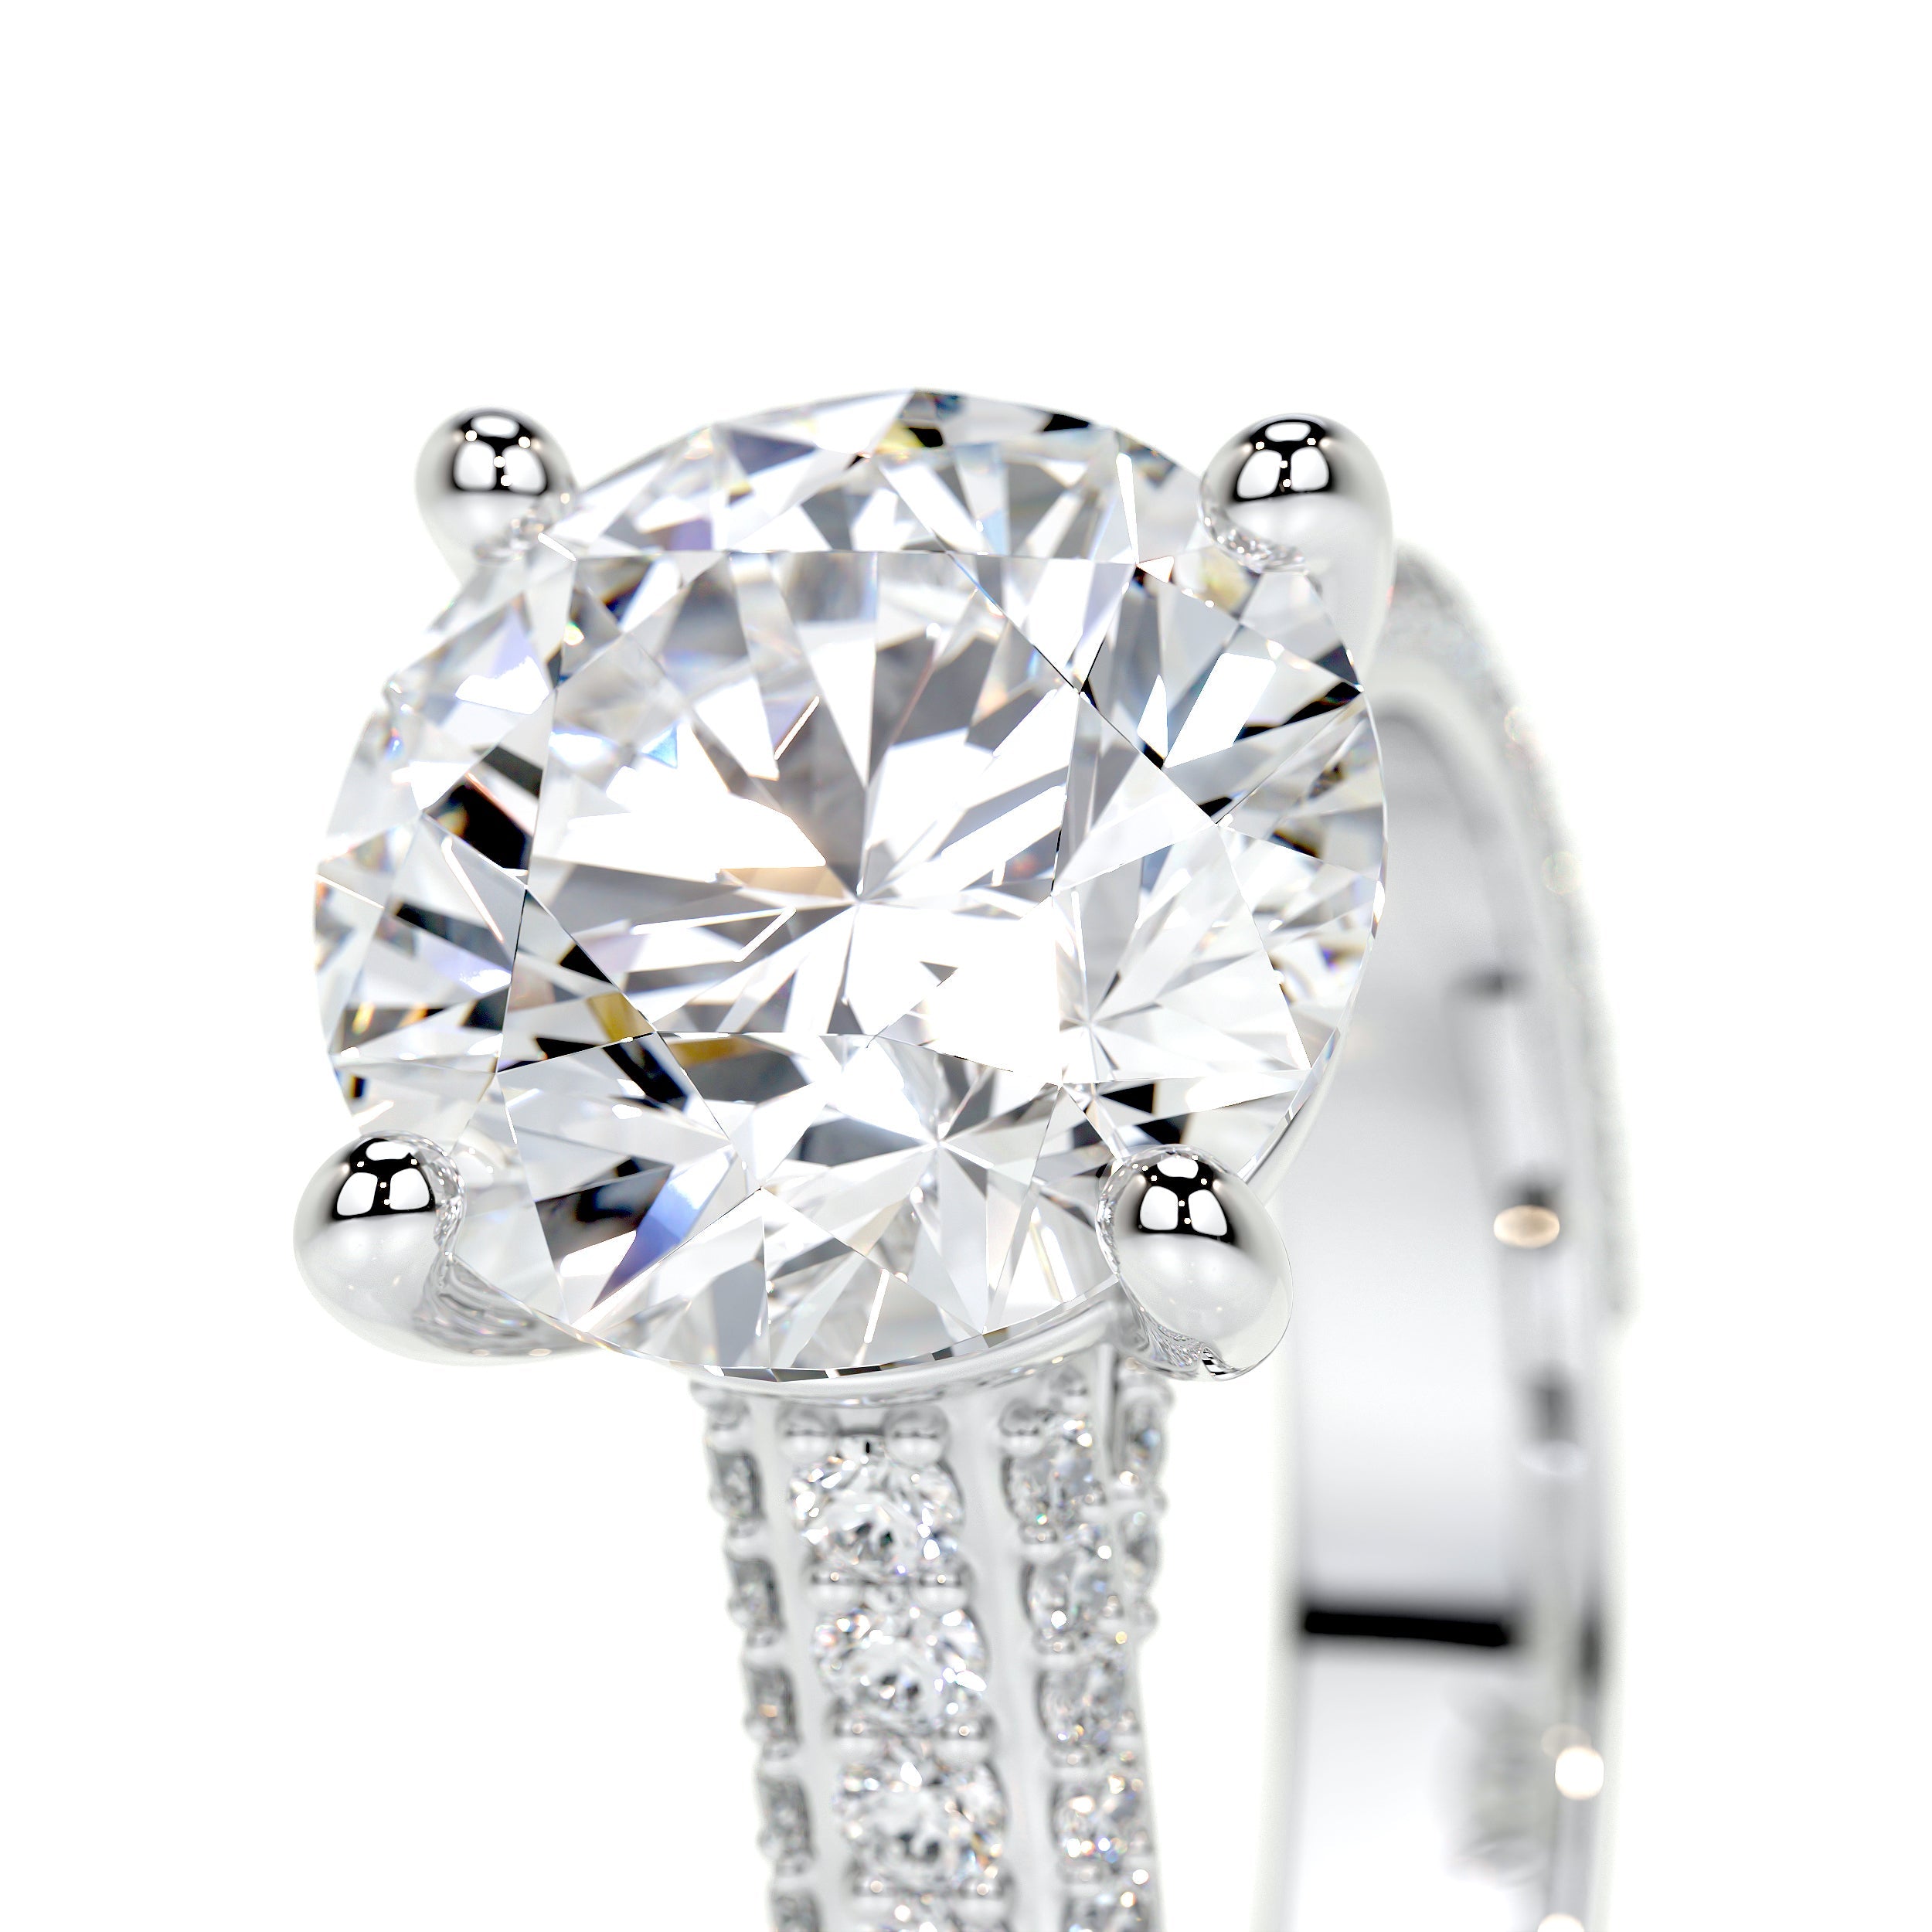 Janet Lab Grown Diamond Ring   (3.5 Carat) -18K White Gold